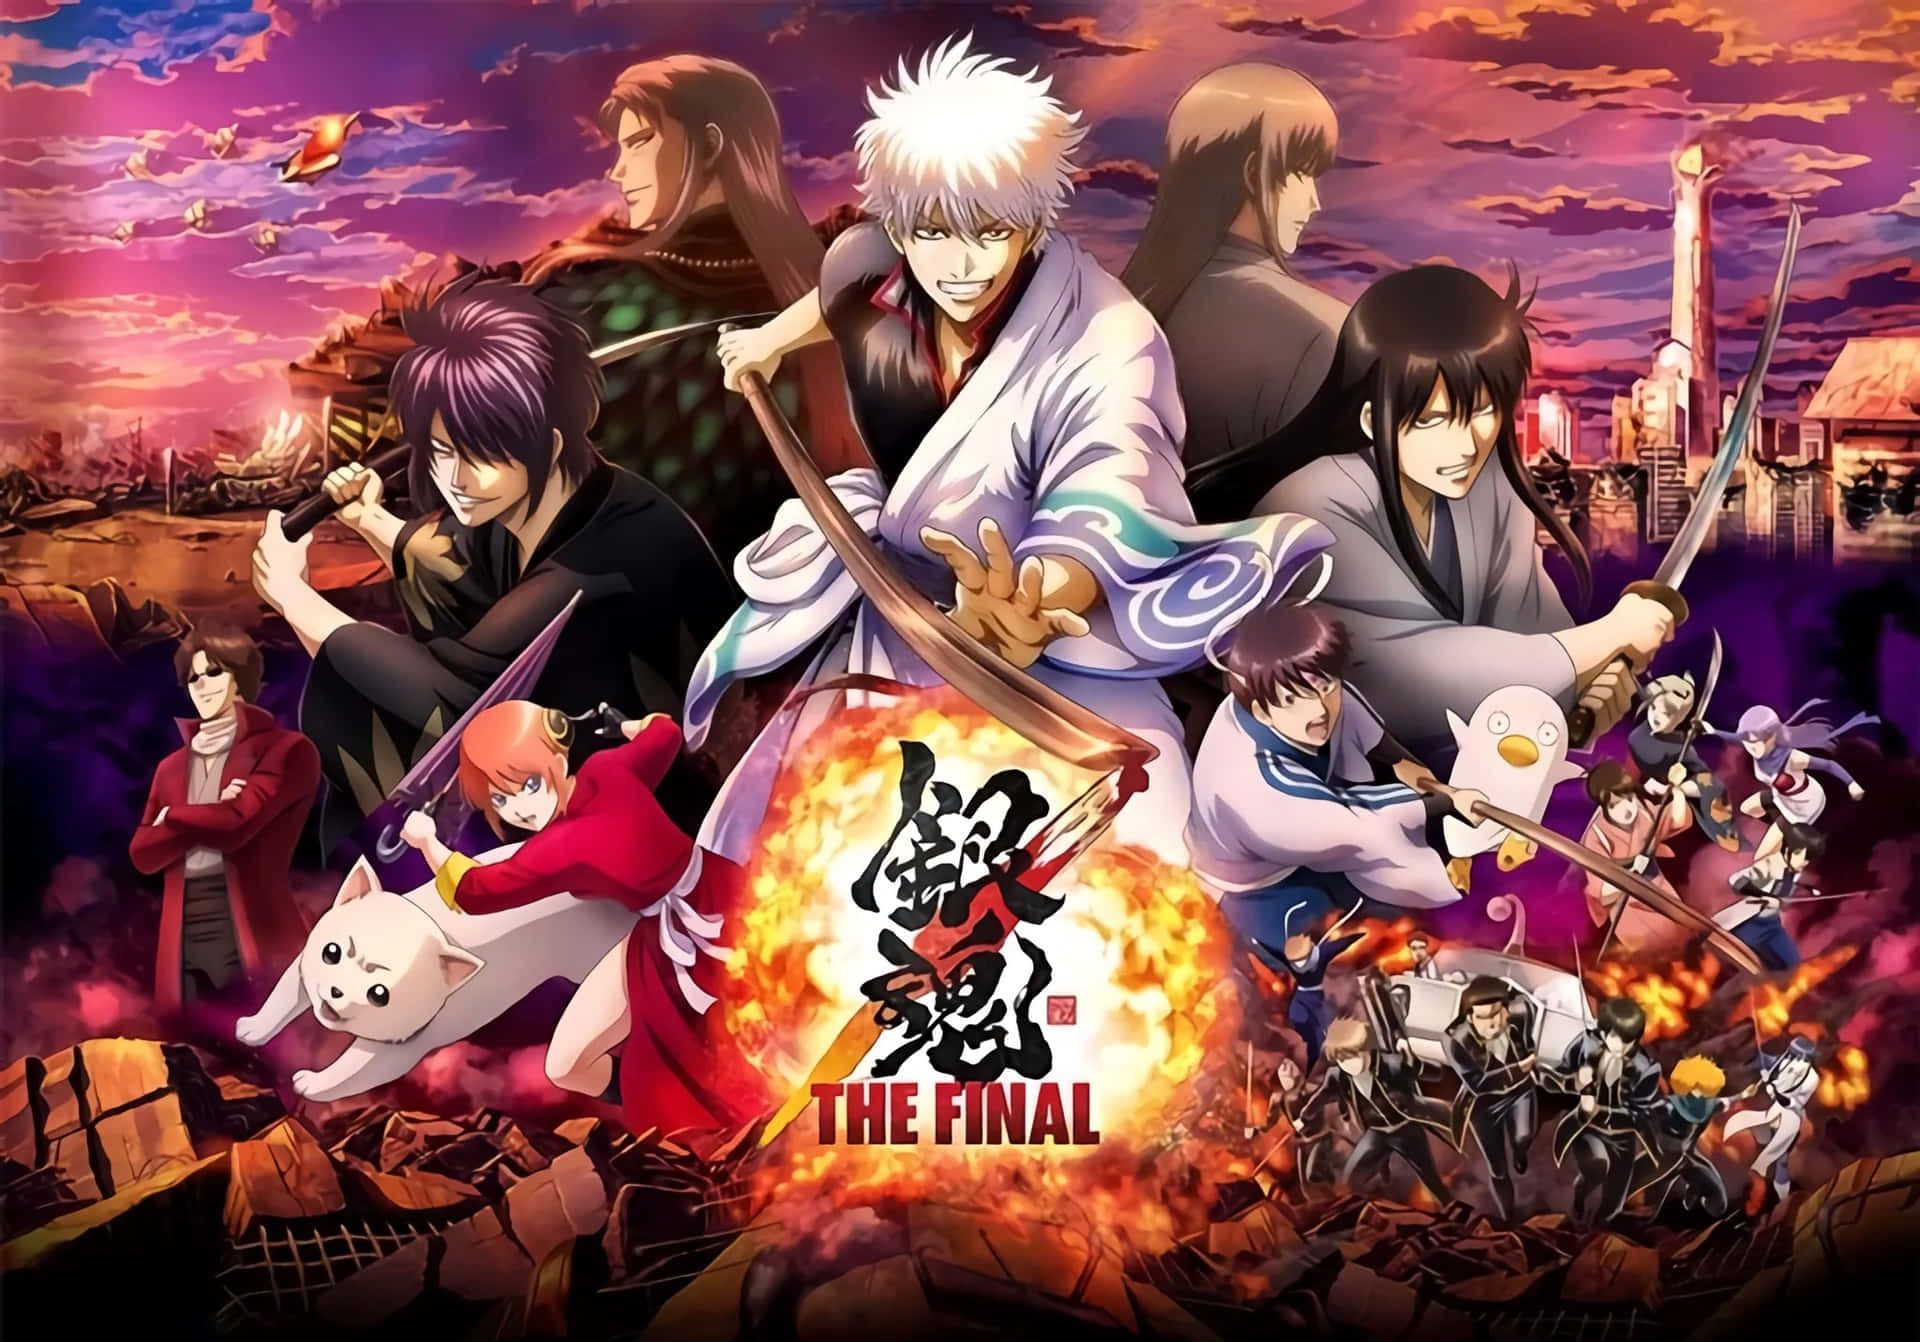 Dasfinale Anime-poster Mit Charakteren Vor Einem Feuer.